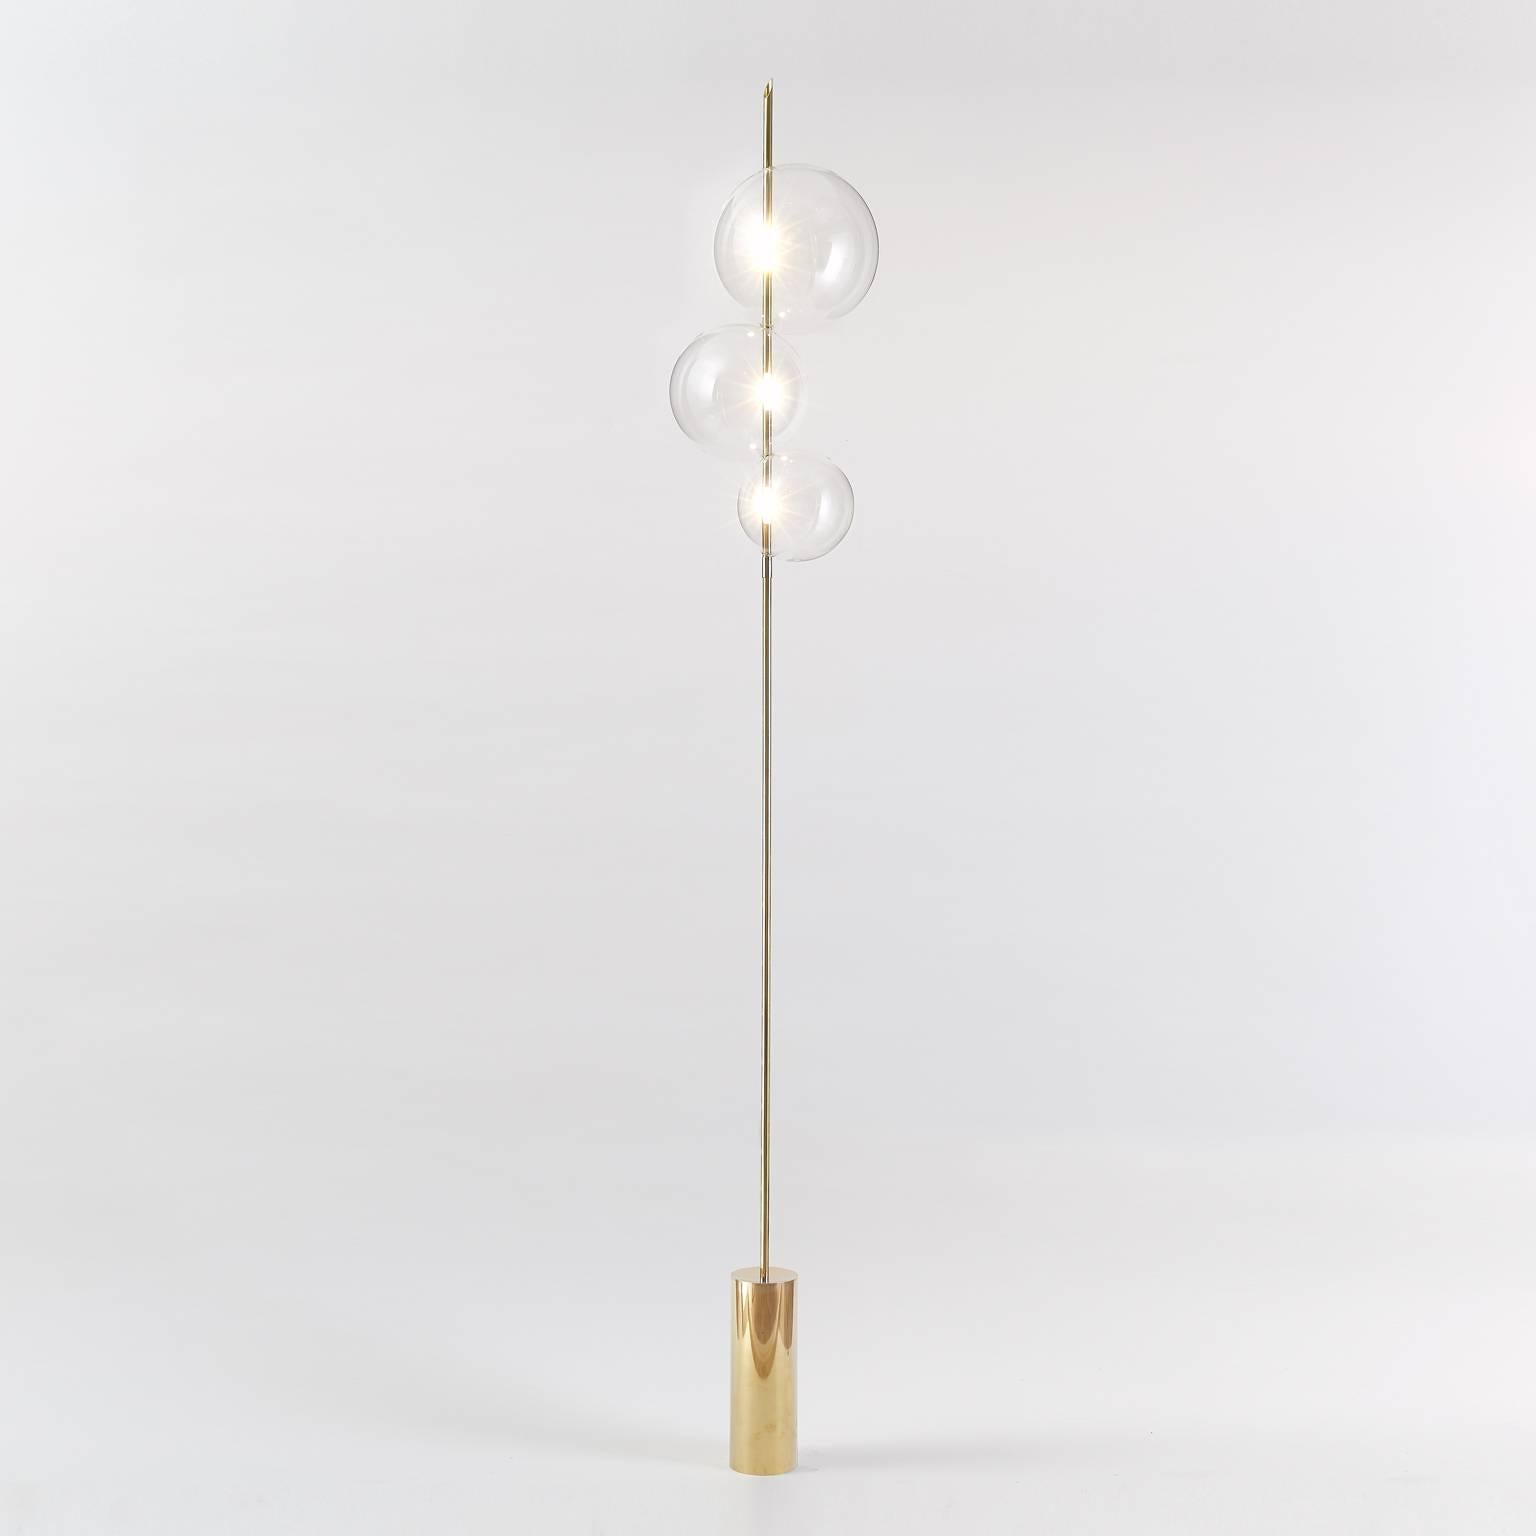 Grandine Three Lights Mirrored Brass ist eine minimalistische, zeitgenössische Stehleuchte, die aus drei sich berührenden, mundgeblasenen Glaskugeln besteht, die so angeordnet sind, dass sie den Eindruck von Eiskugeln erwecken, die